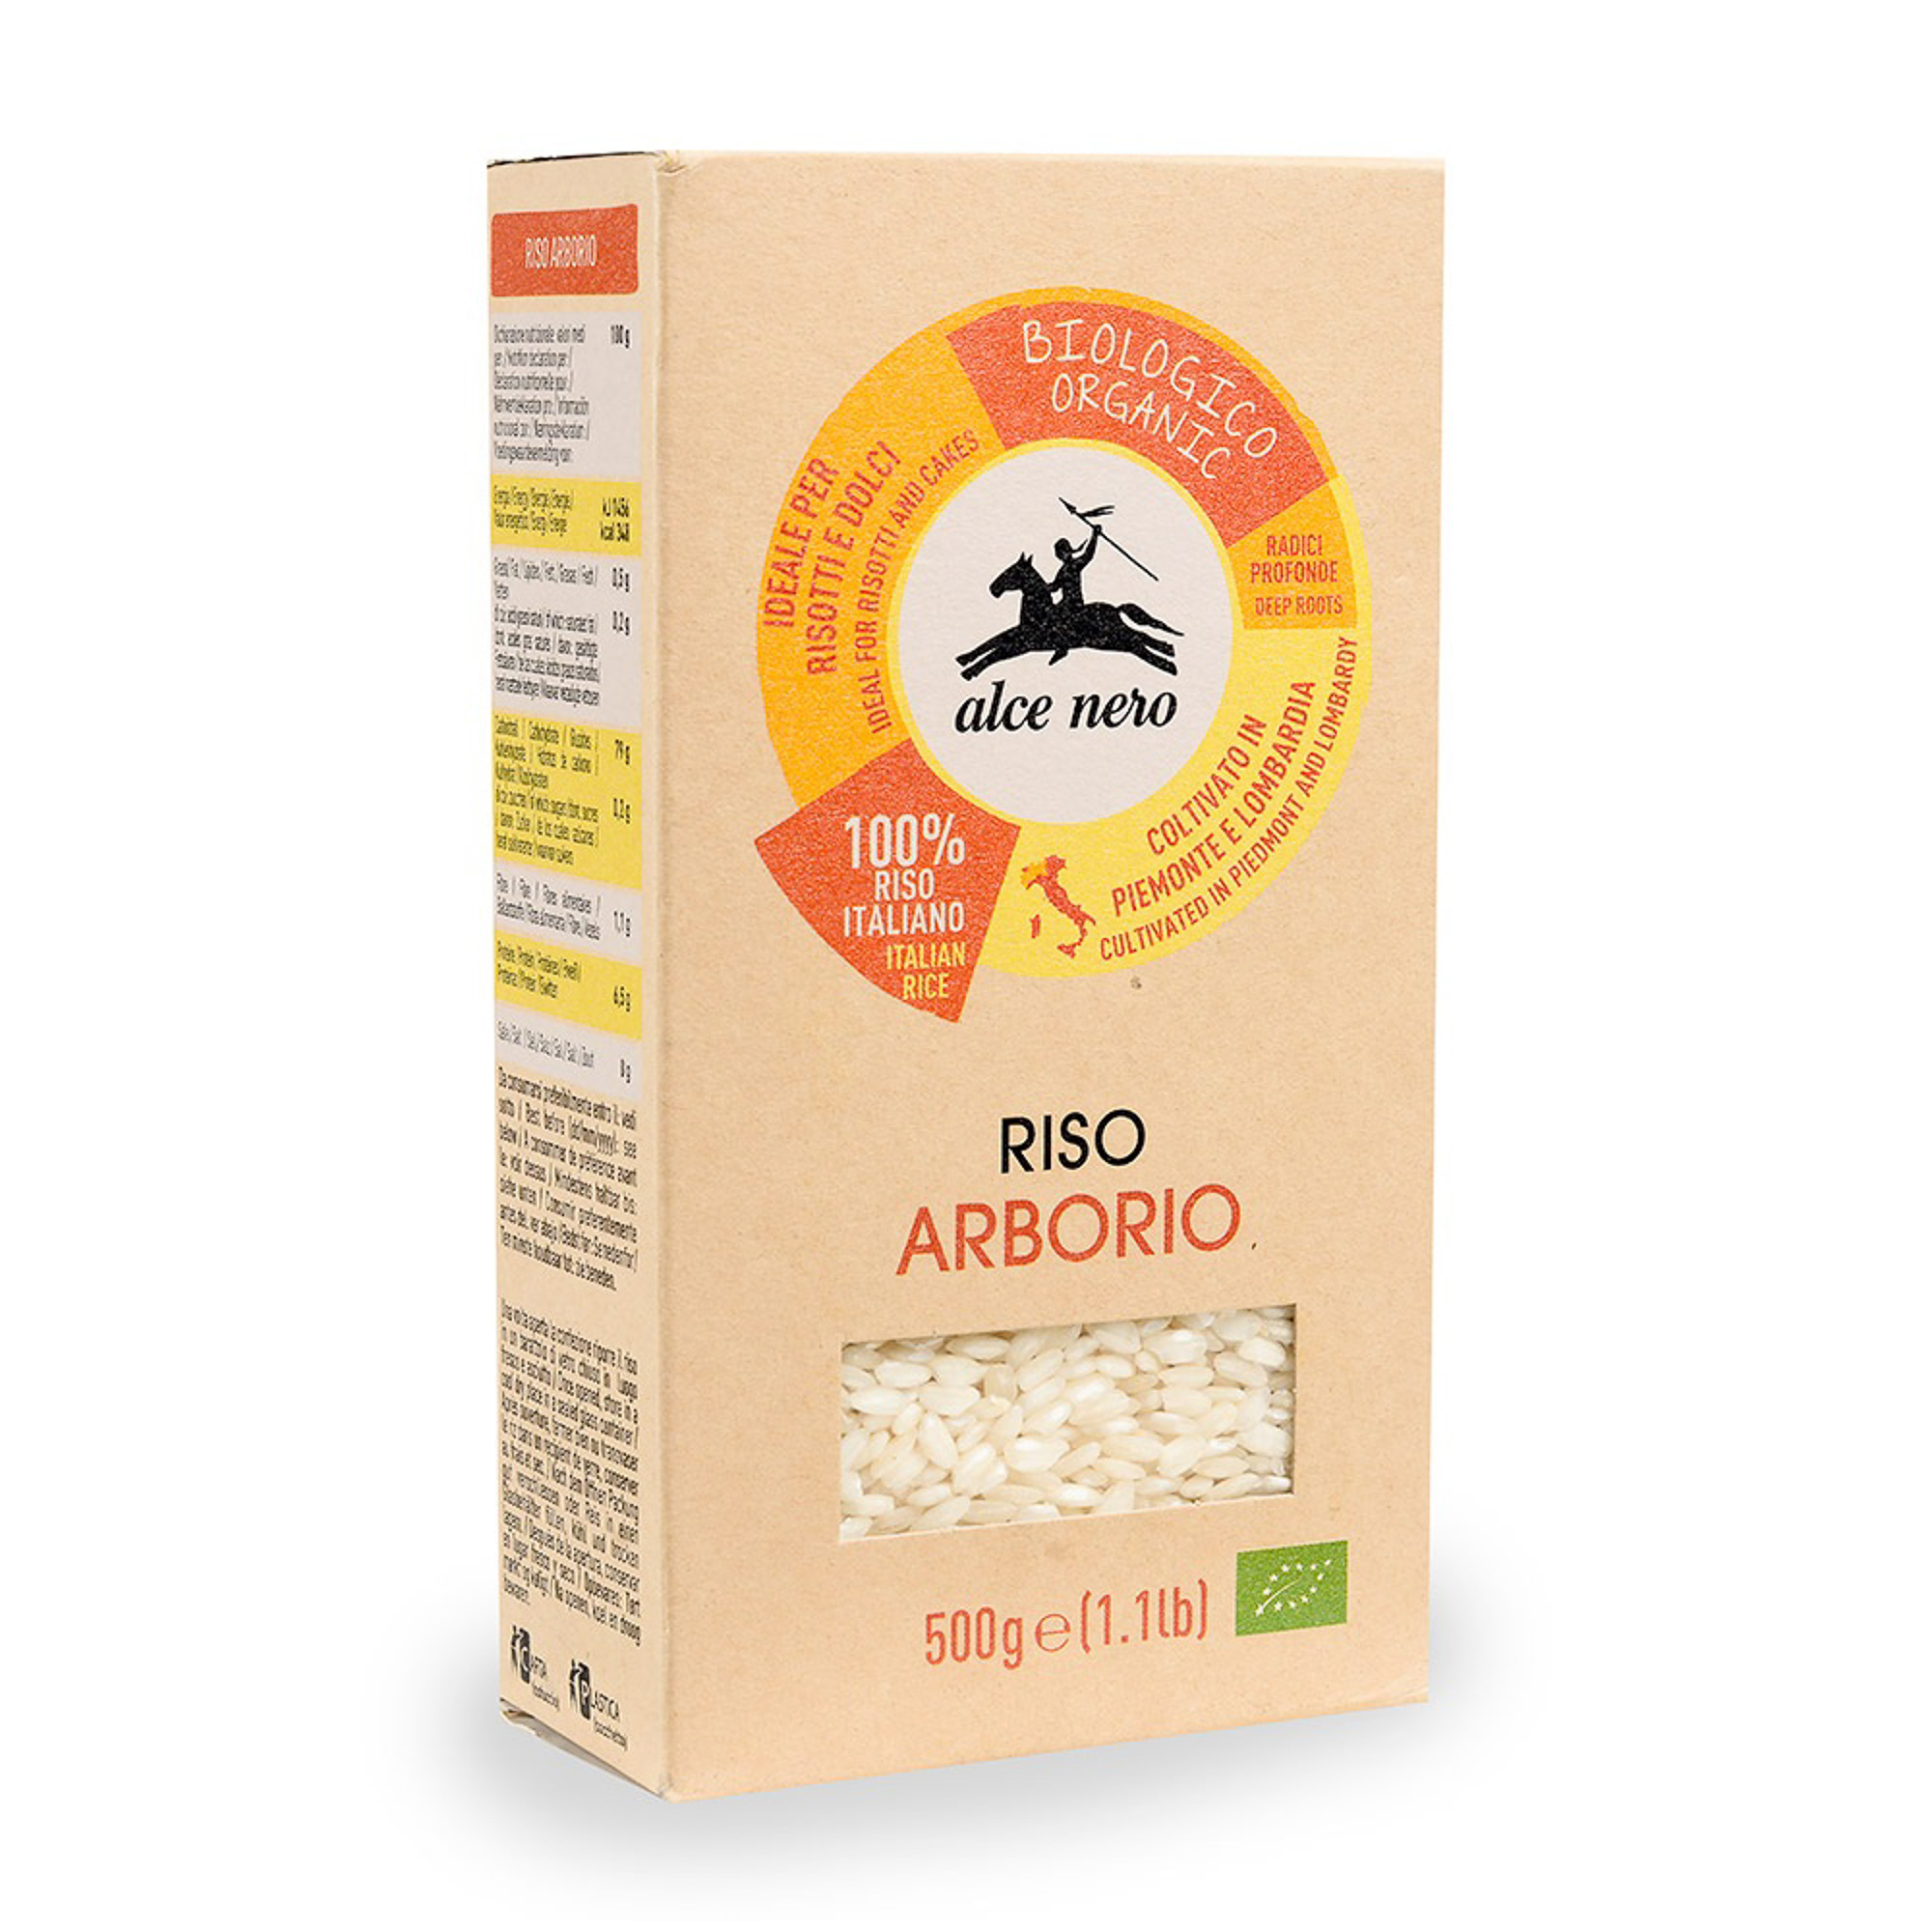 рис alce nero baldo integrale organic нешлифованный коричневый 500 г Рис Alce Nero Арборио 500 г